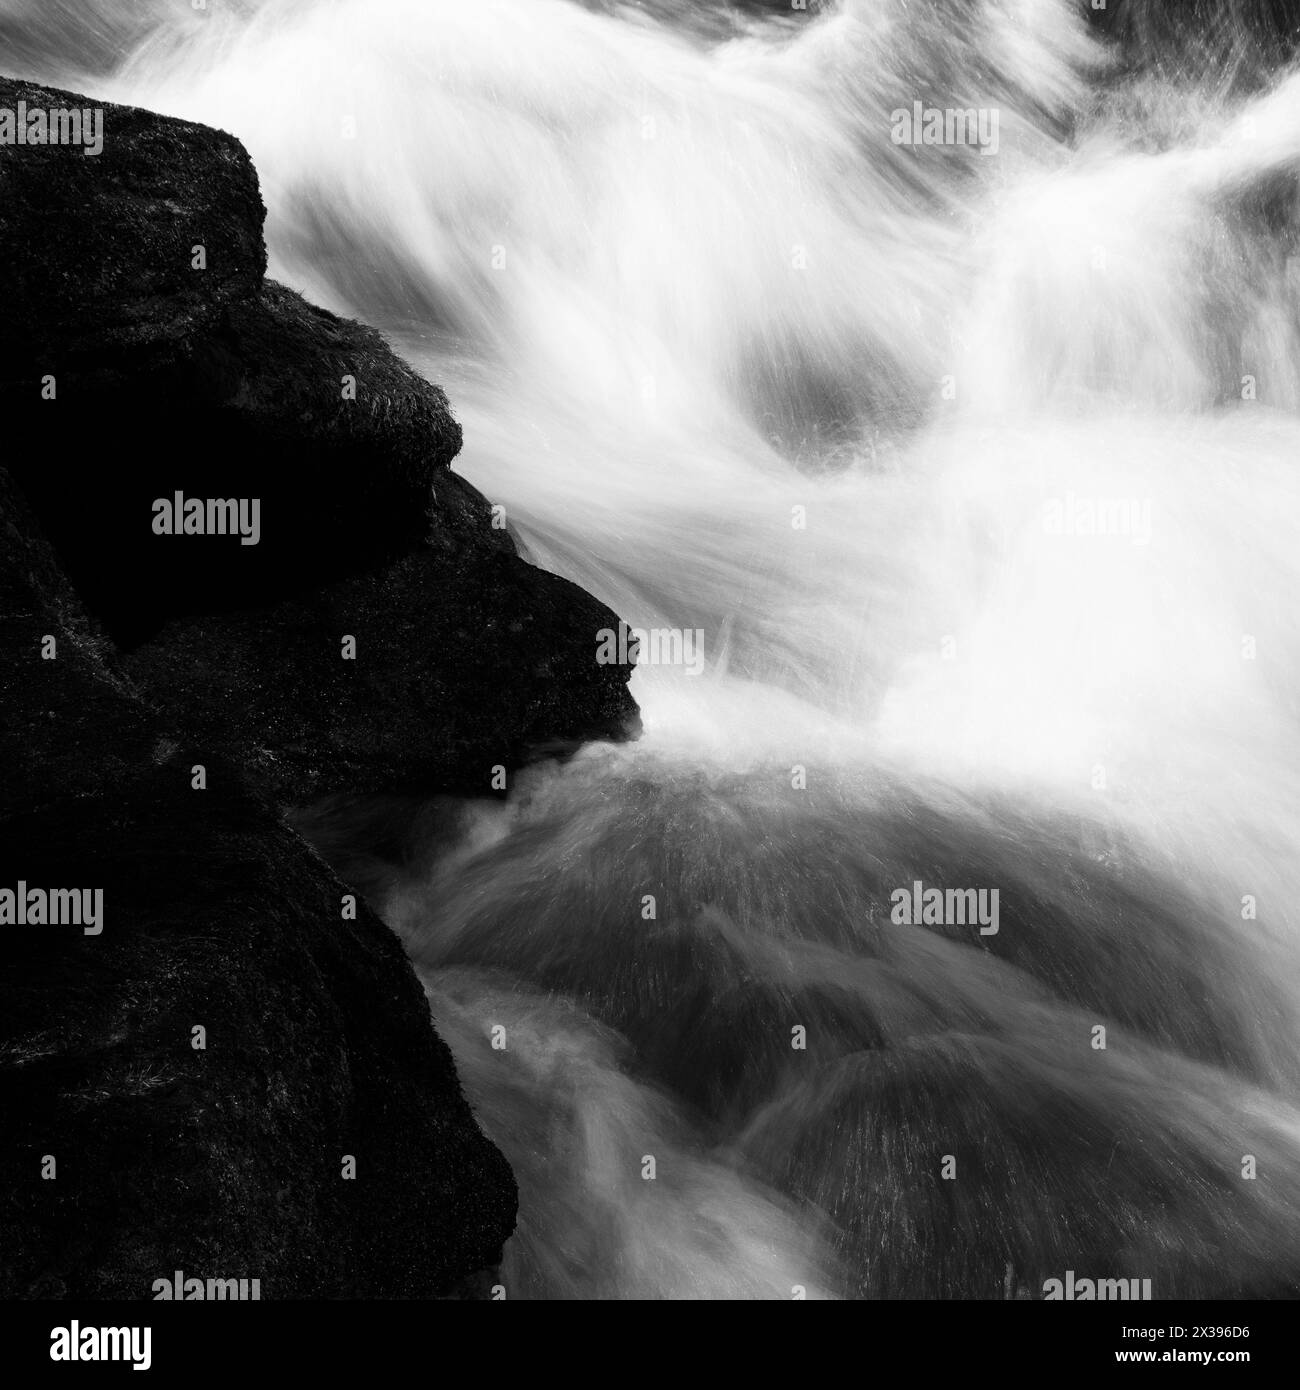 Eine abstrakte Ansicht des Wassers, die Turbulenzen darstellt, in Schwarzweiß Stockfoto